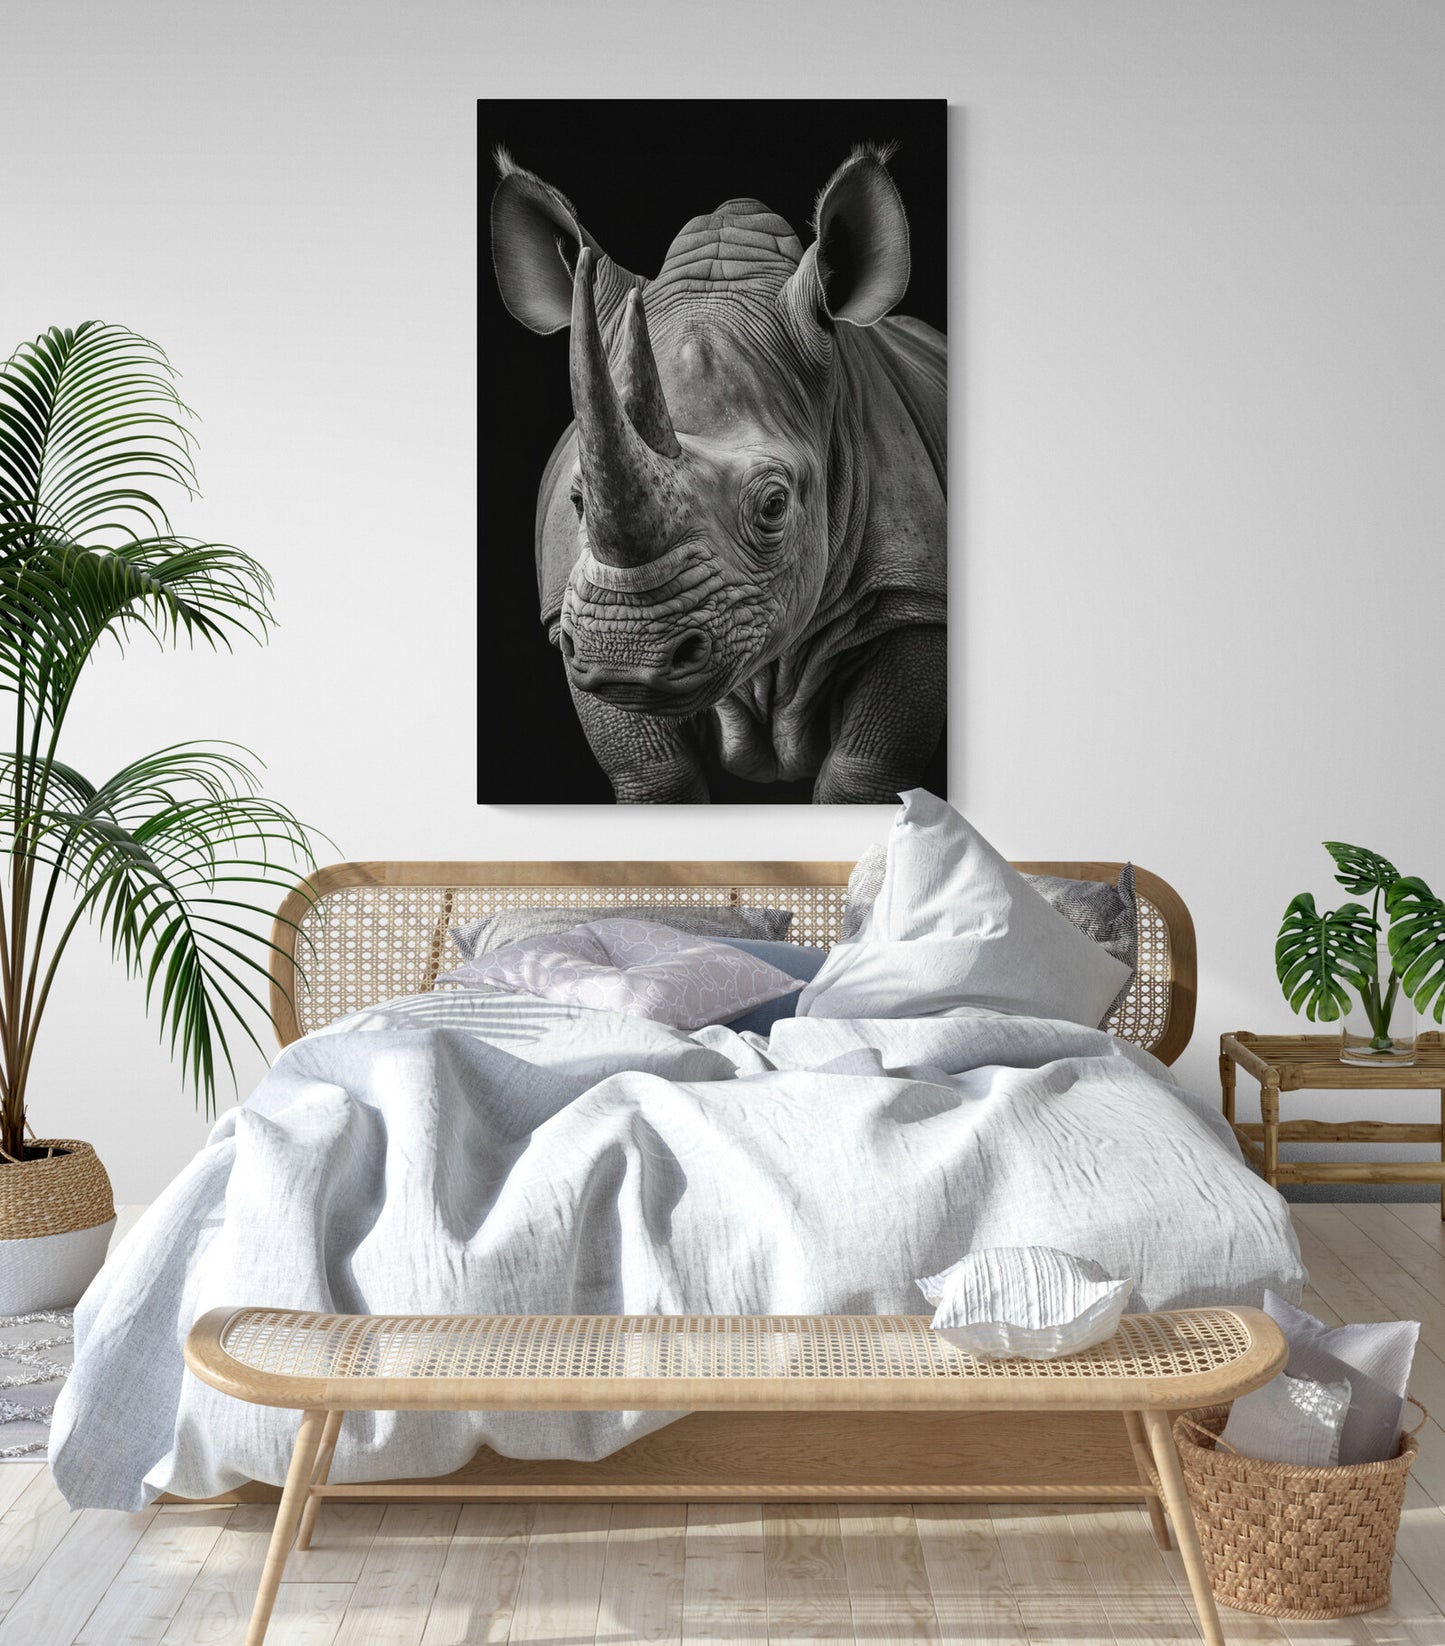 Tableau deco du rhinocéros, photographie noir et blanc en gros plan, animal majestueux, dans une chambre